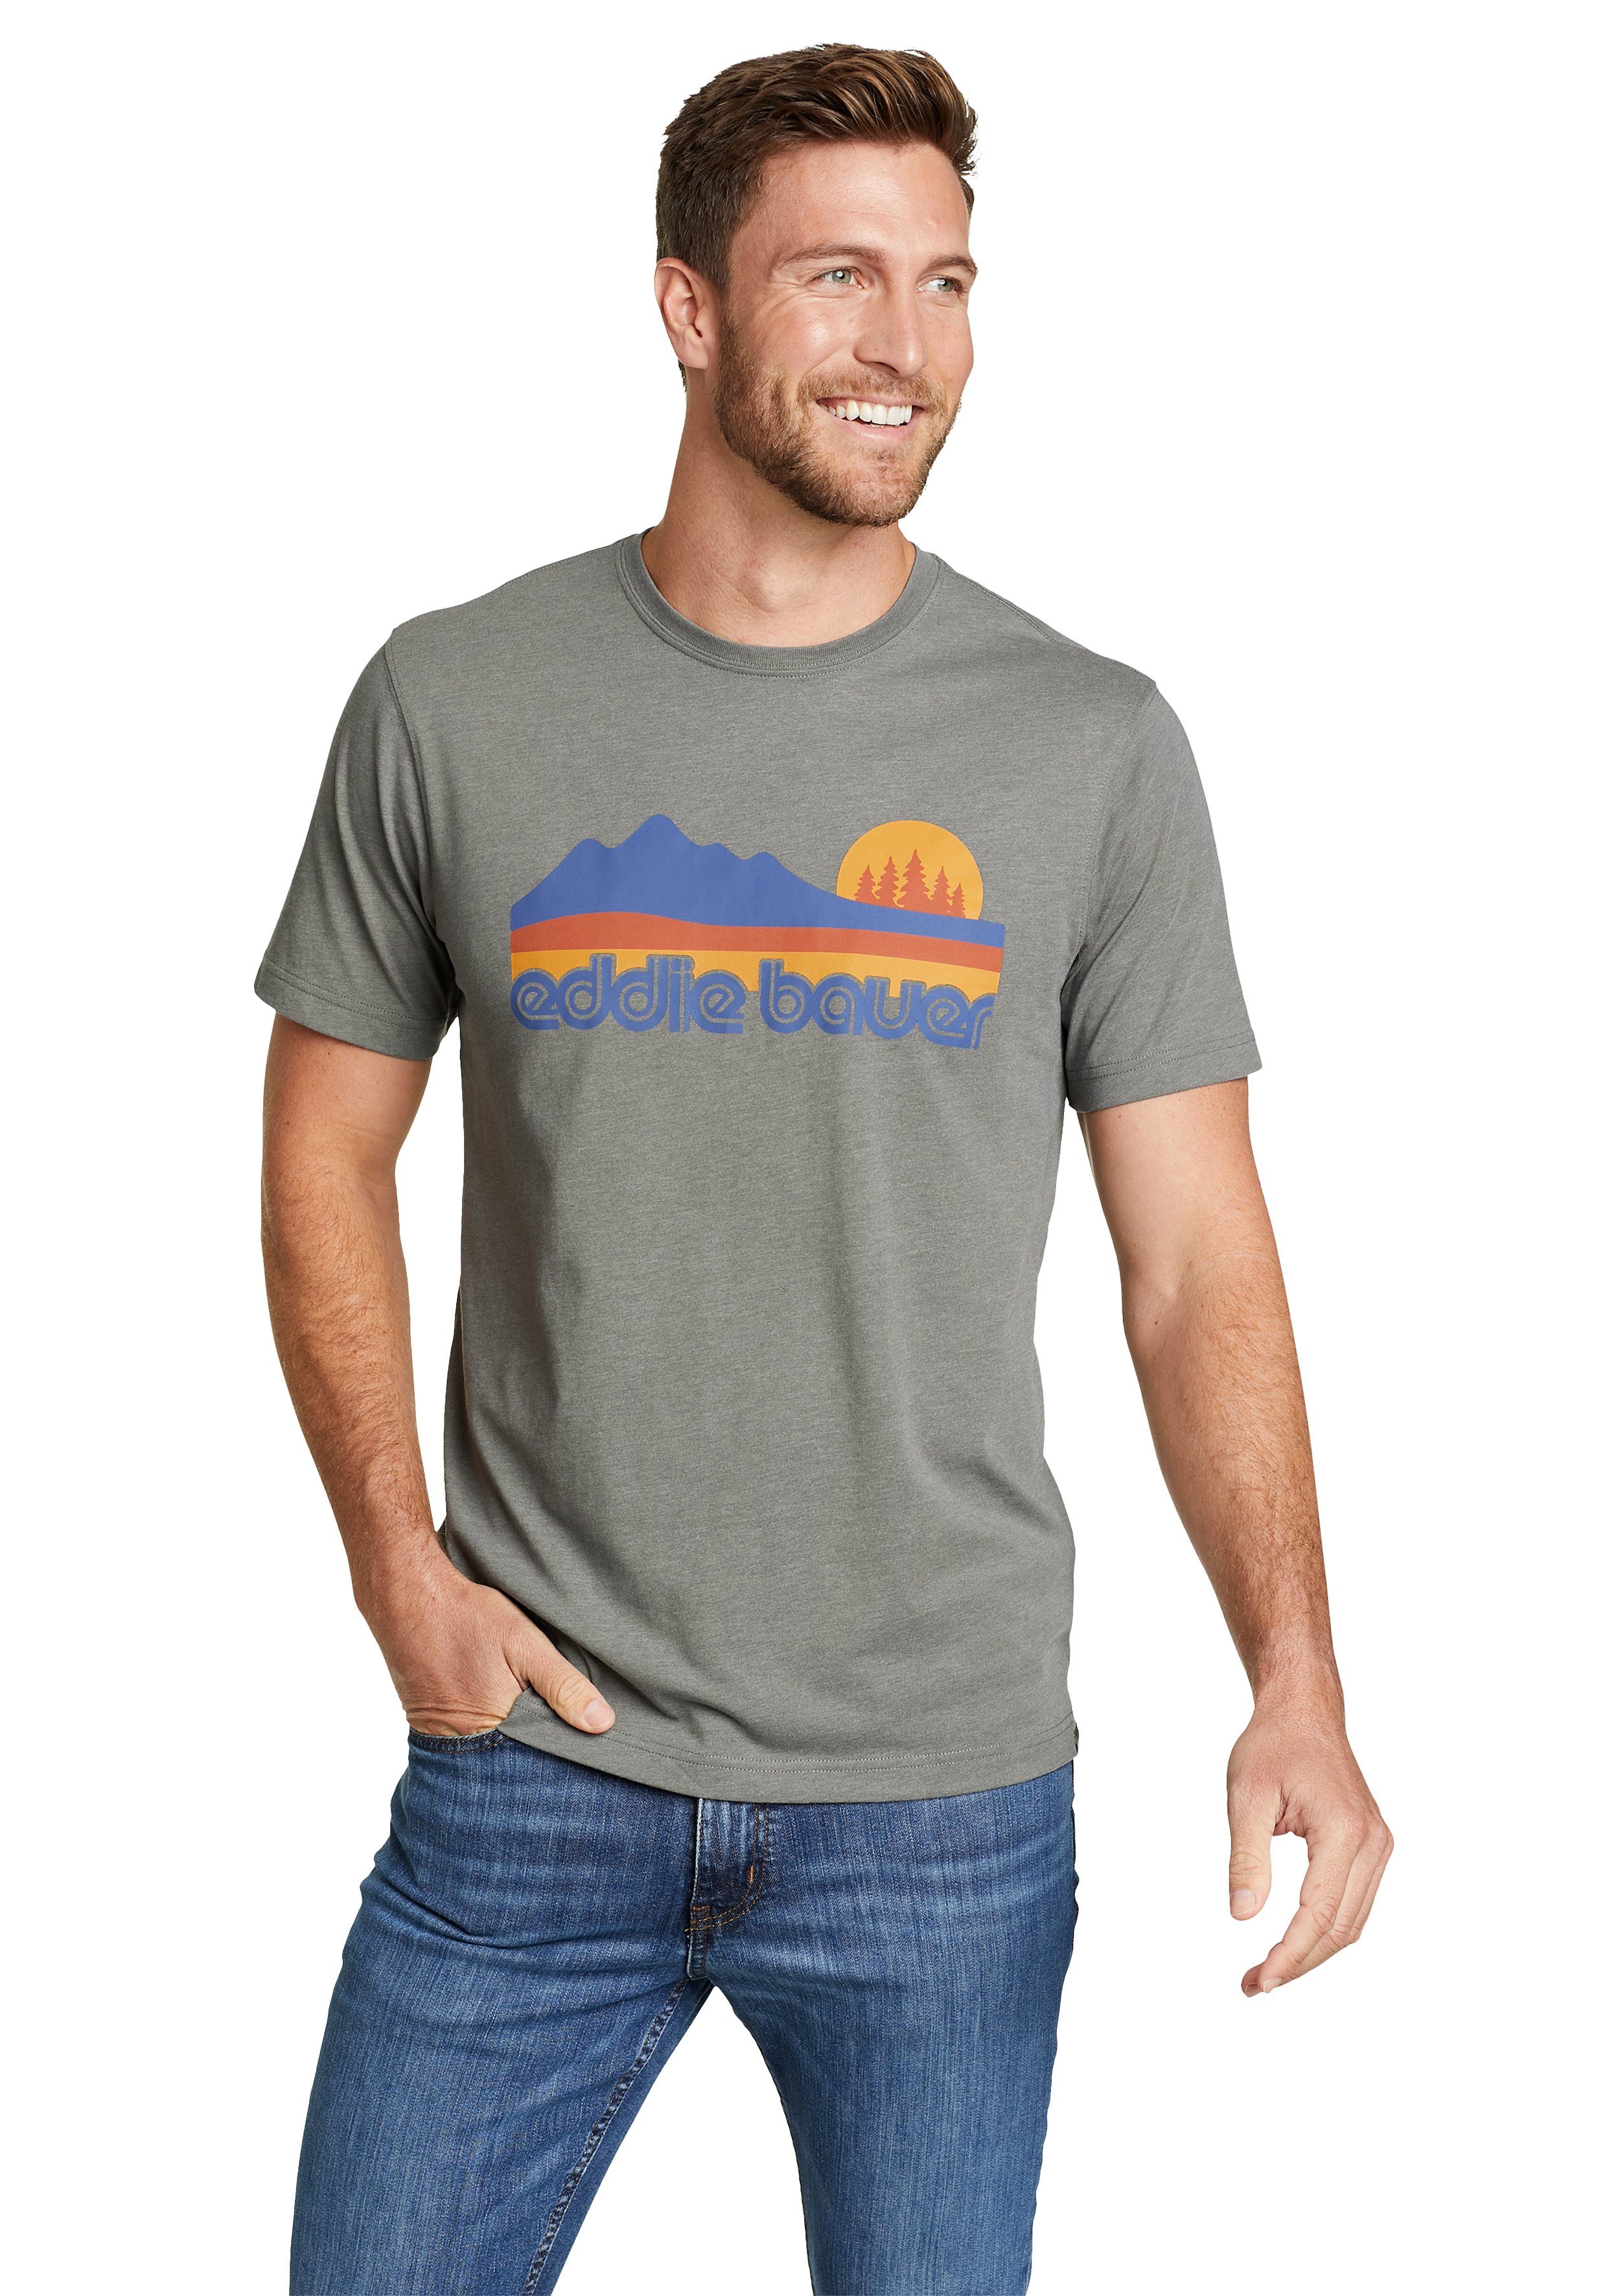 Eddie Bauer T-Shirt Graphic T-Shirt Retro